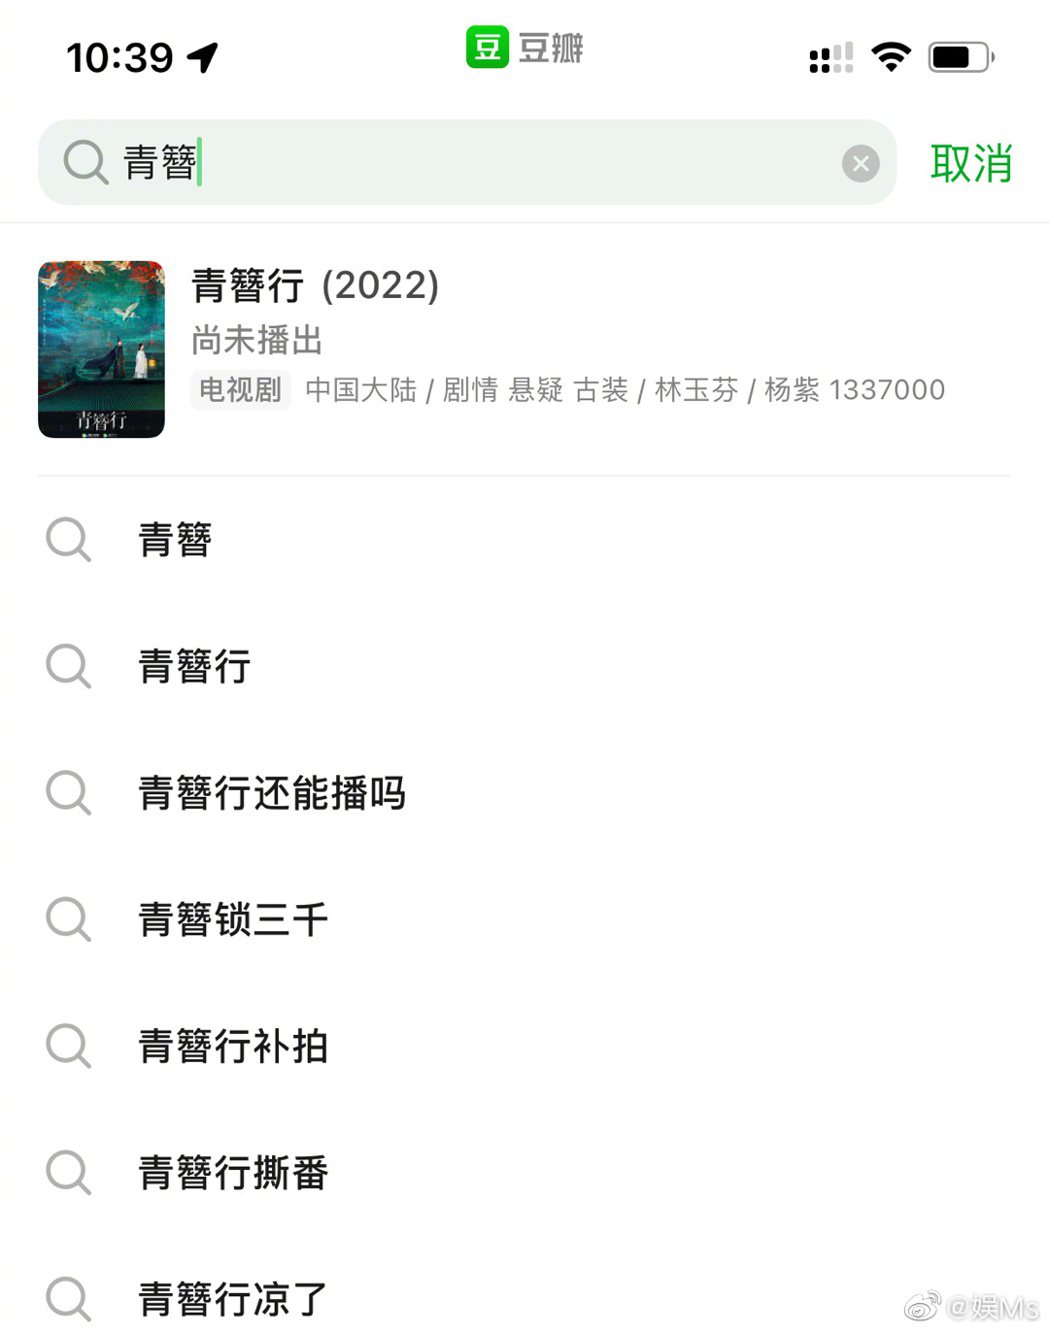 網友還發現在豆瓣上搜尋吳亦凡過往戲劇作品，吳亦凡的名字變成一個編號1337000...